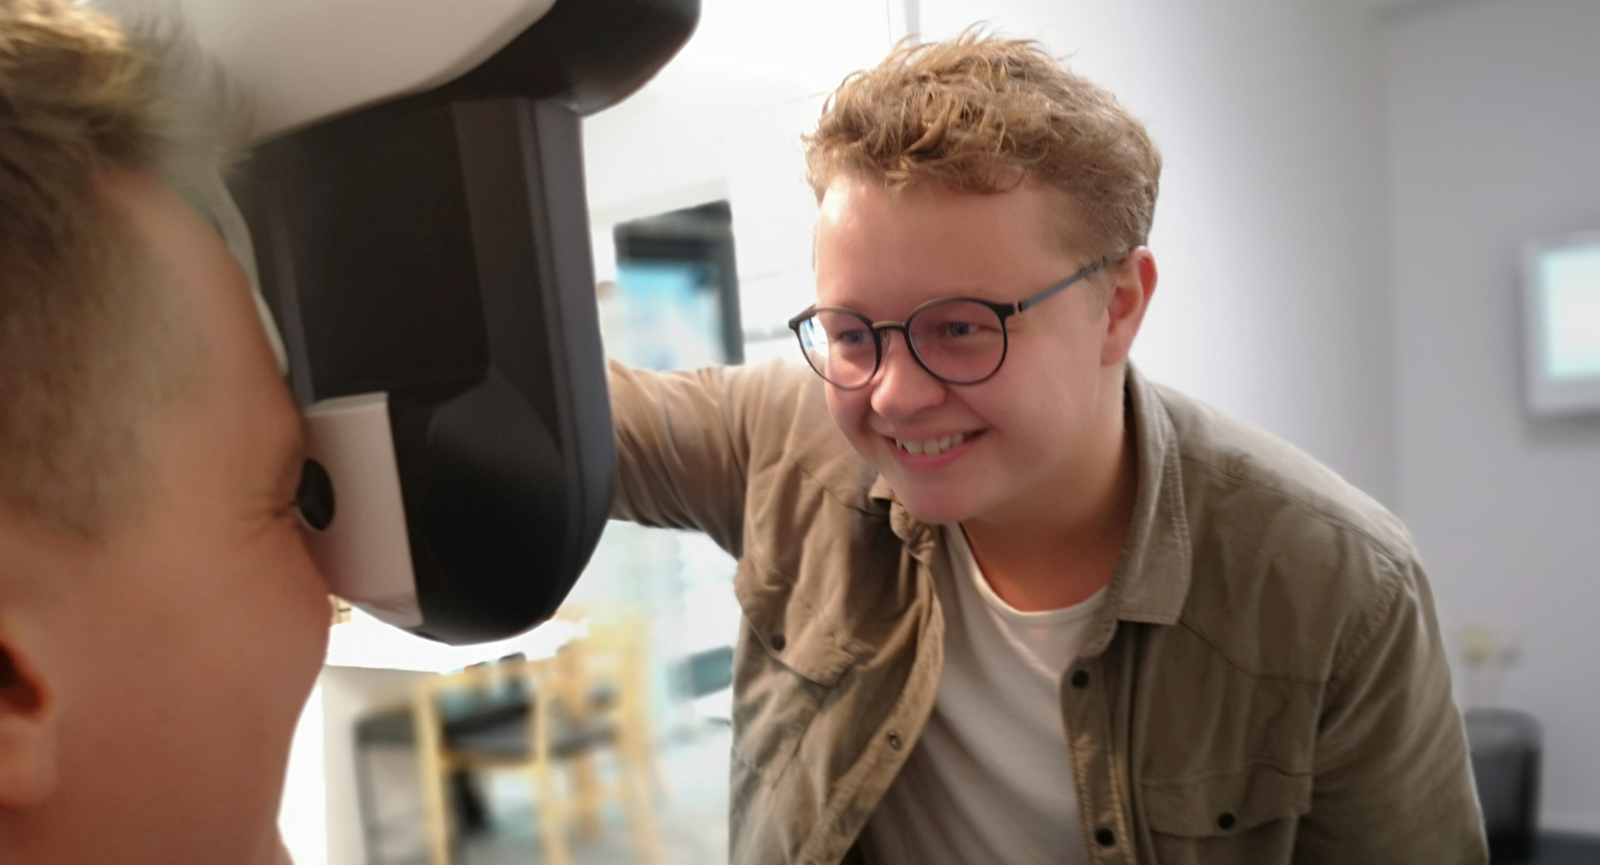 Optometri studerende Jens Munck undersøger en patient